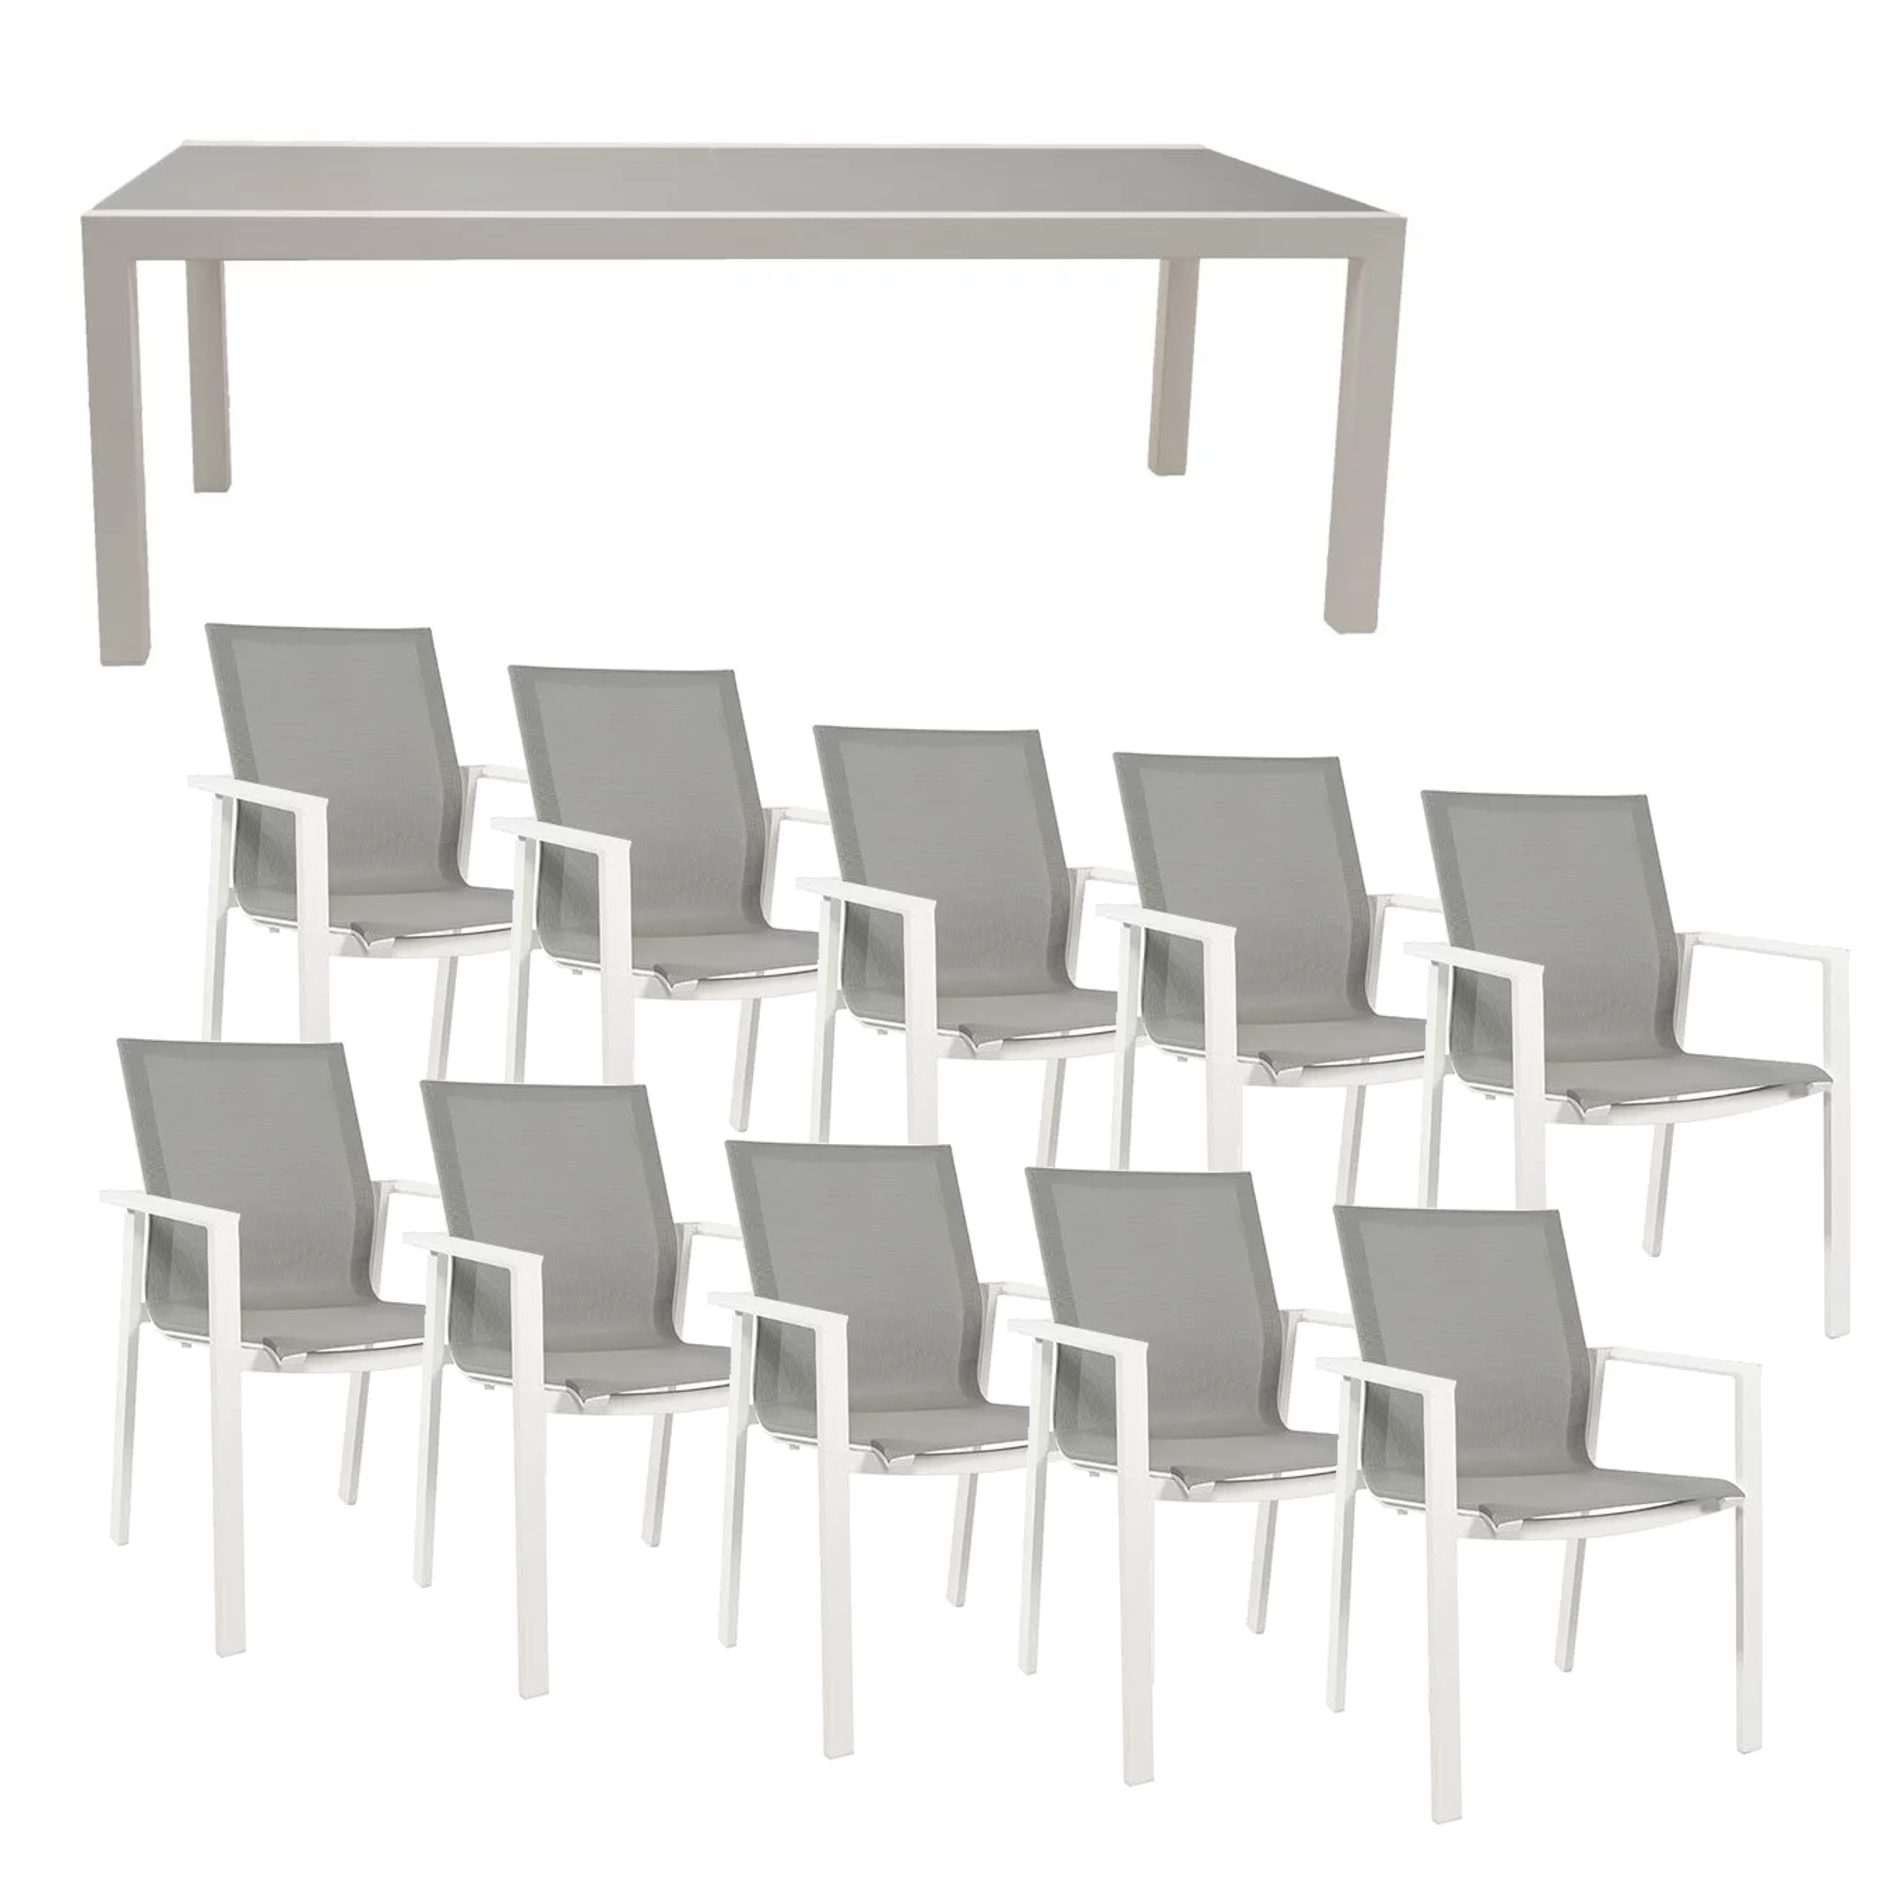 Jati&Kebon Gartenmöbel-Set 11-tlg. mit Stuhl "Beja" und Ausziehtisch "Livorno", Gestelle Aluminium weiß, Sitzfläche Textil hellgrau, Tischplatte Glas hellgrau